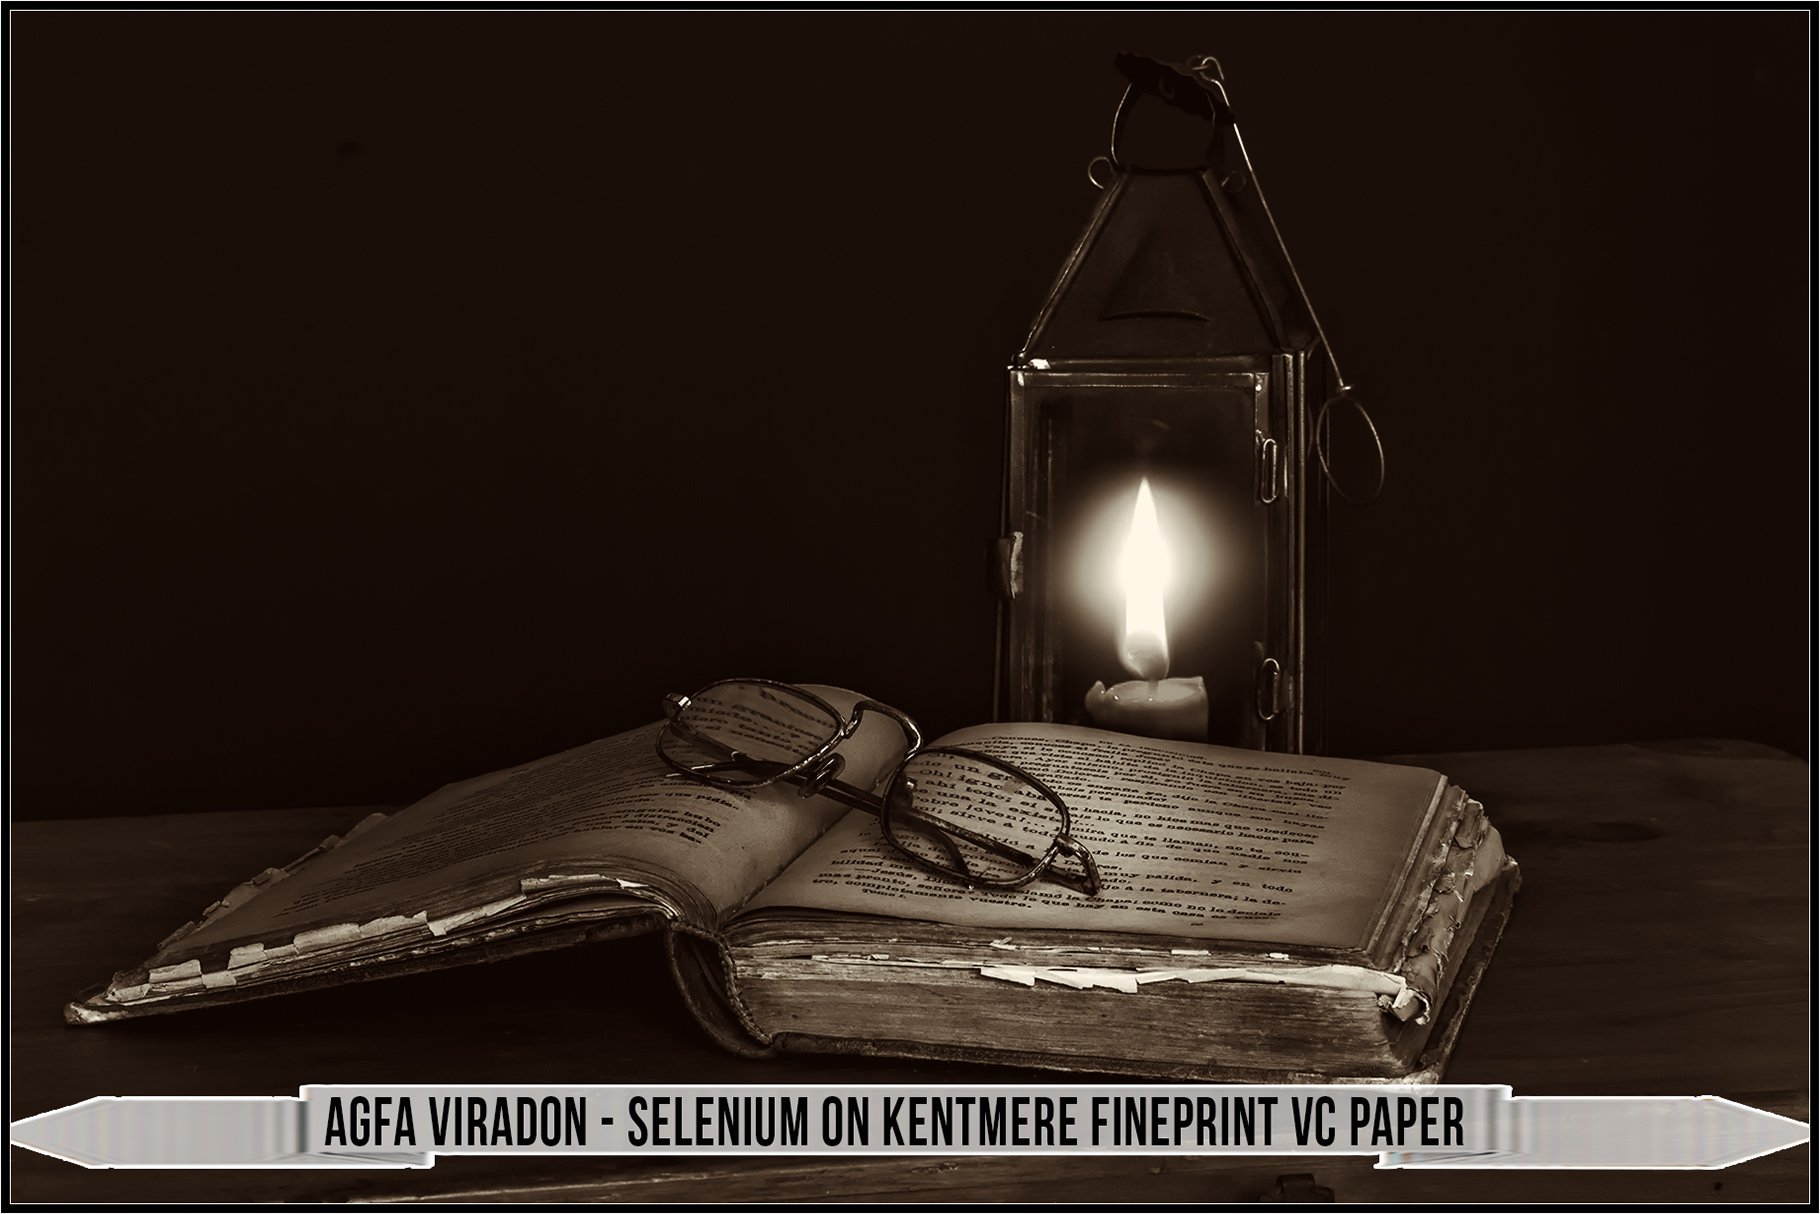 agfa viradon selenium on kentmere fineprint vc paper 451